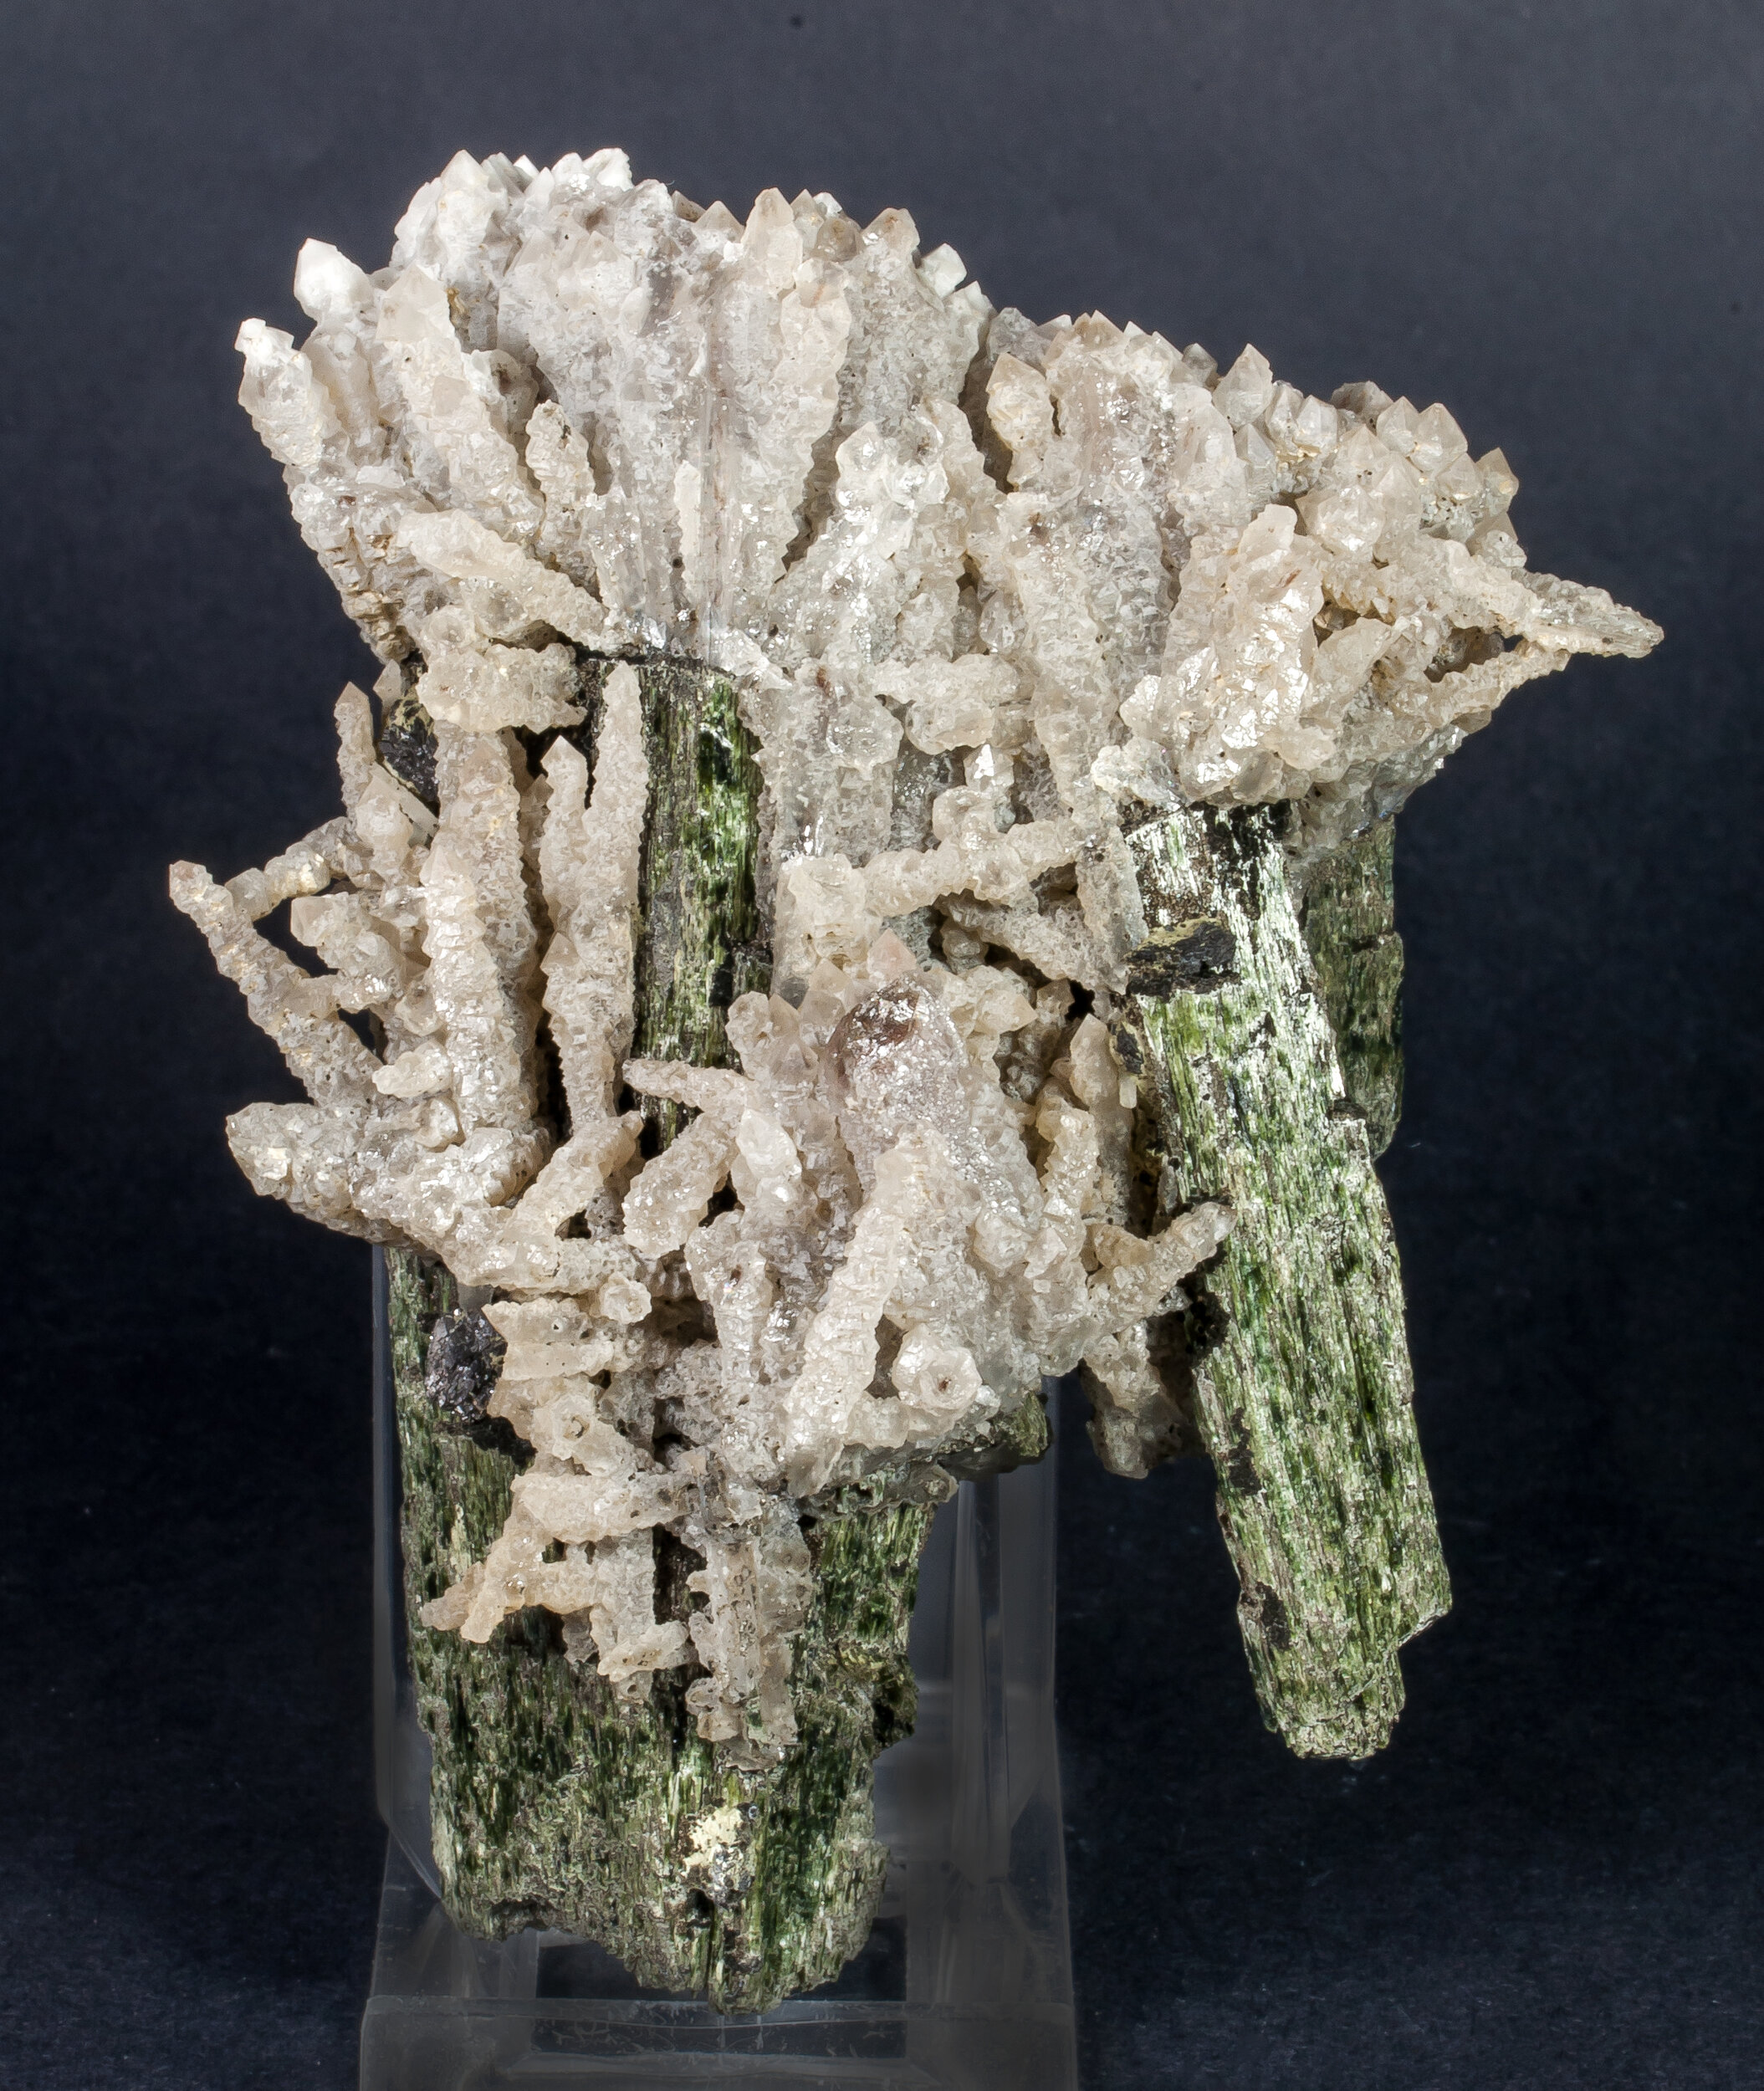 specimens/s_imagesAM7/Hedenbergite-MB47AM7f.jpg